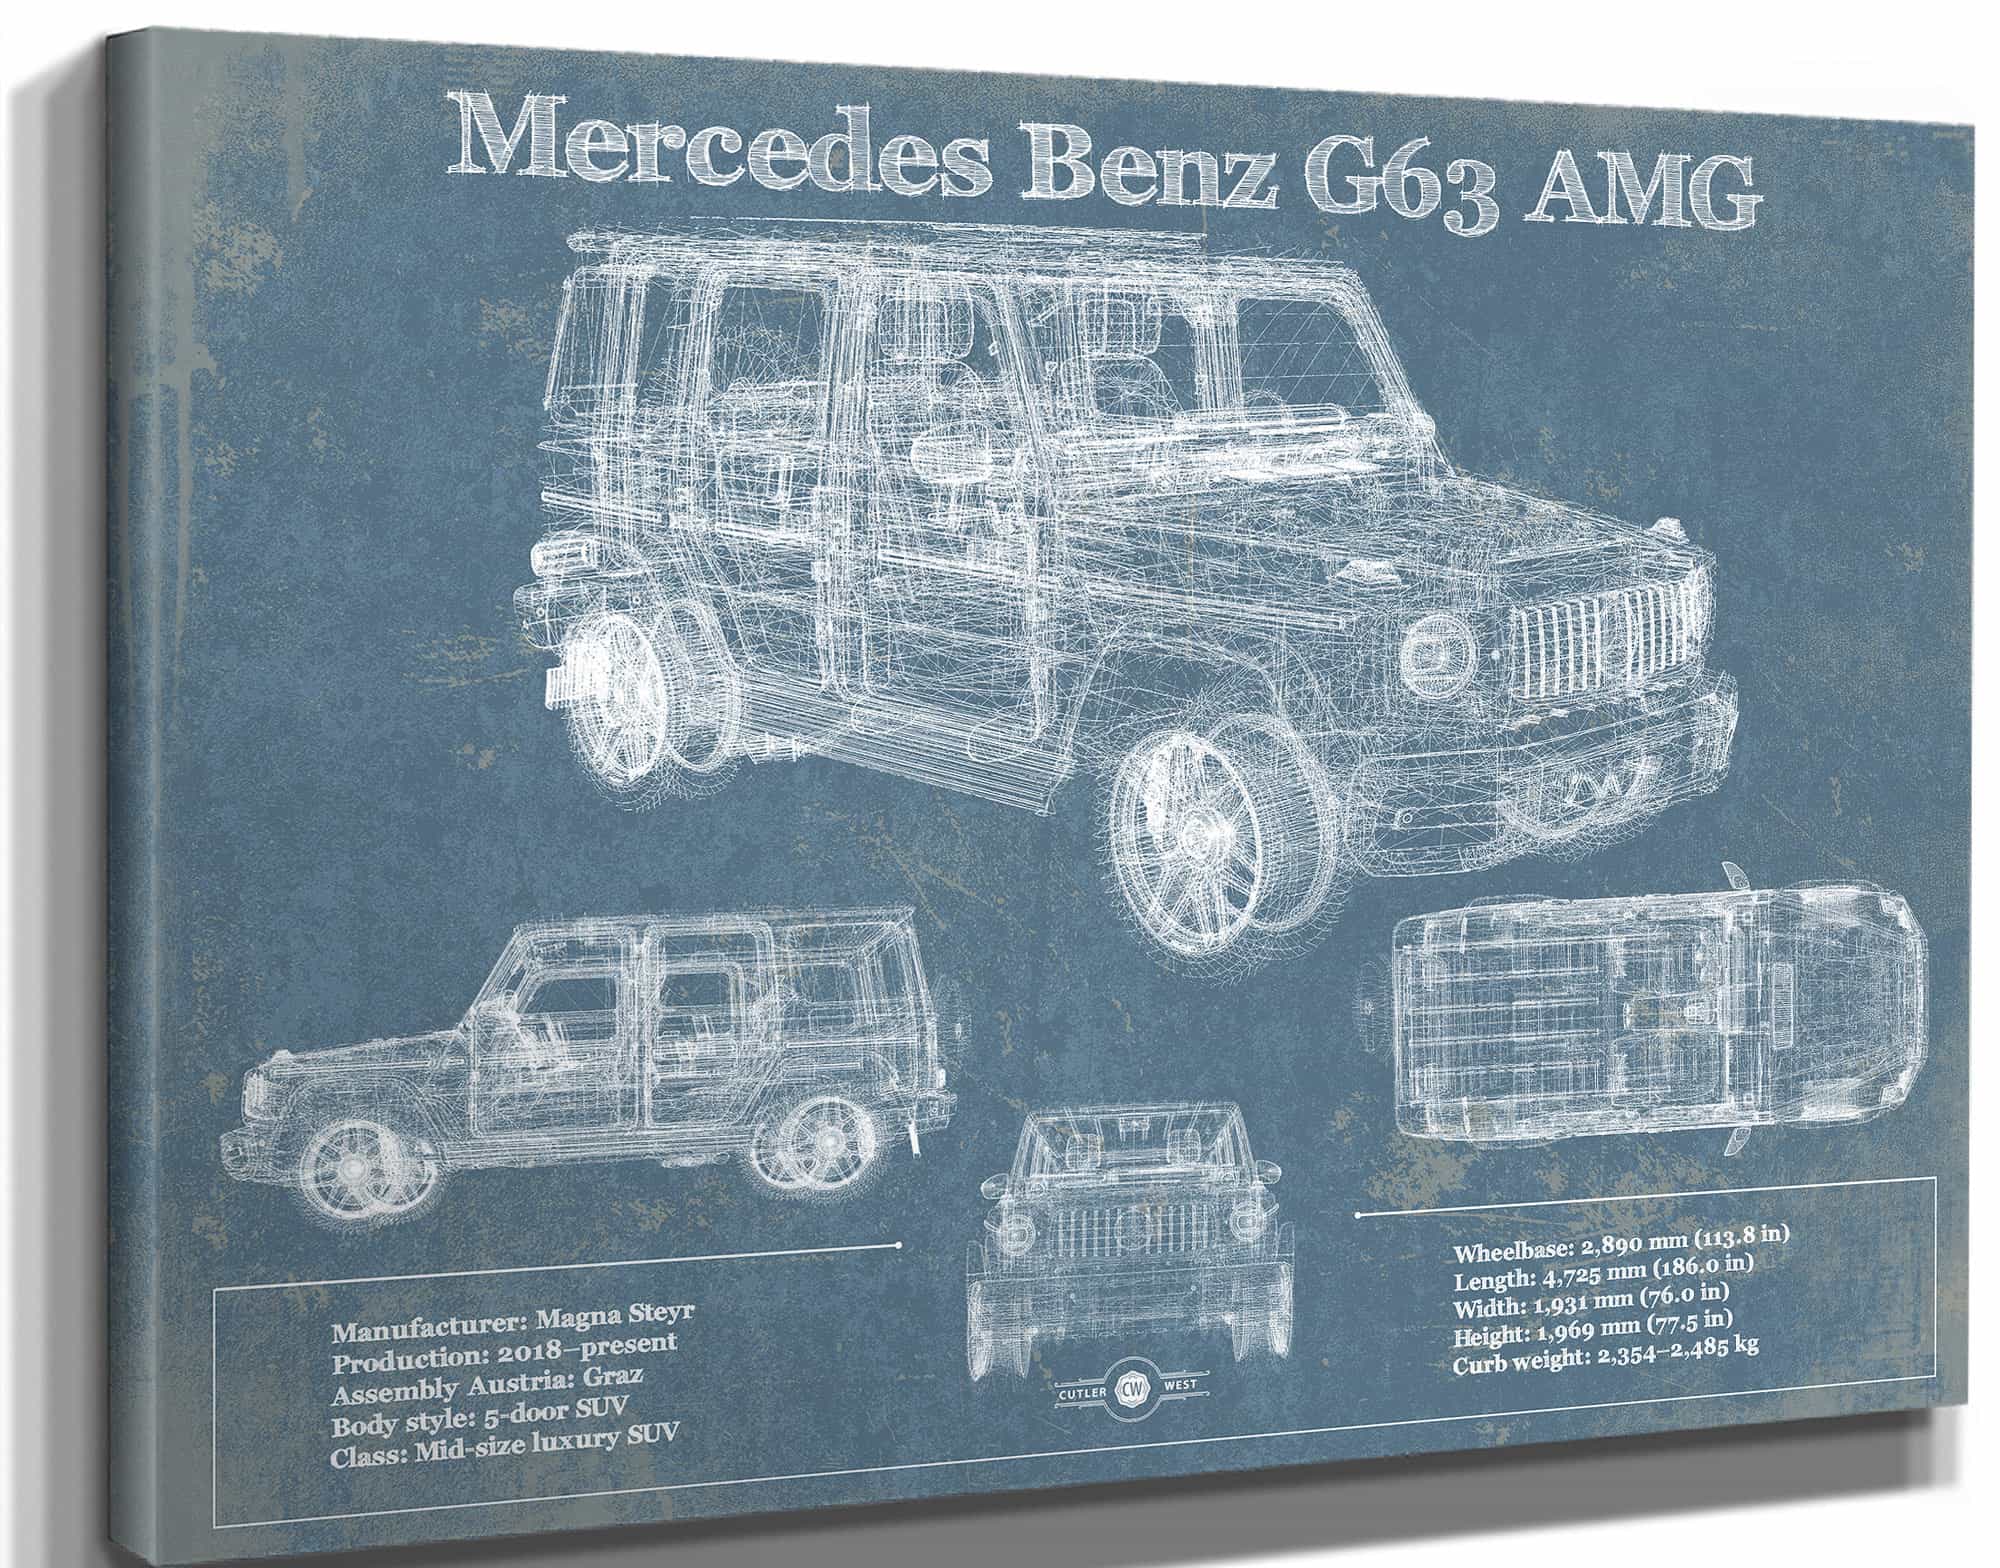 Mercedes Benz G63 AMG (2019) Blueprint Vintage Auto Print